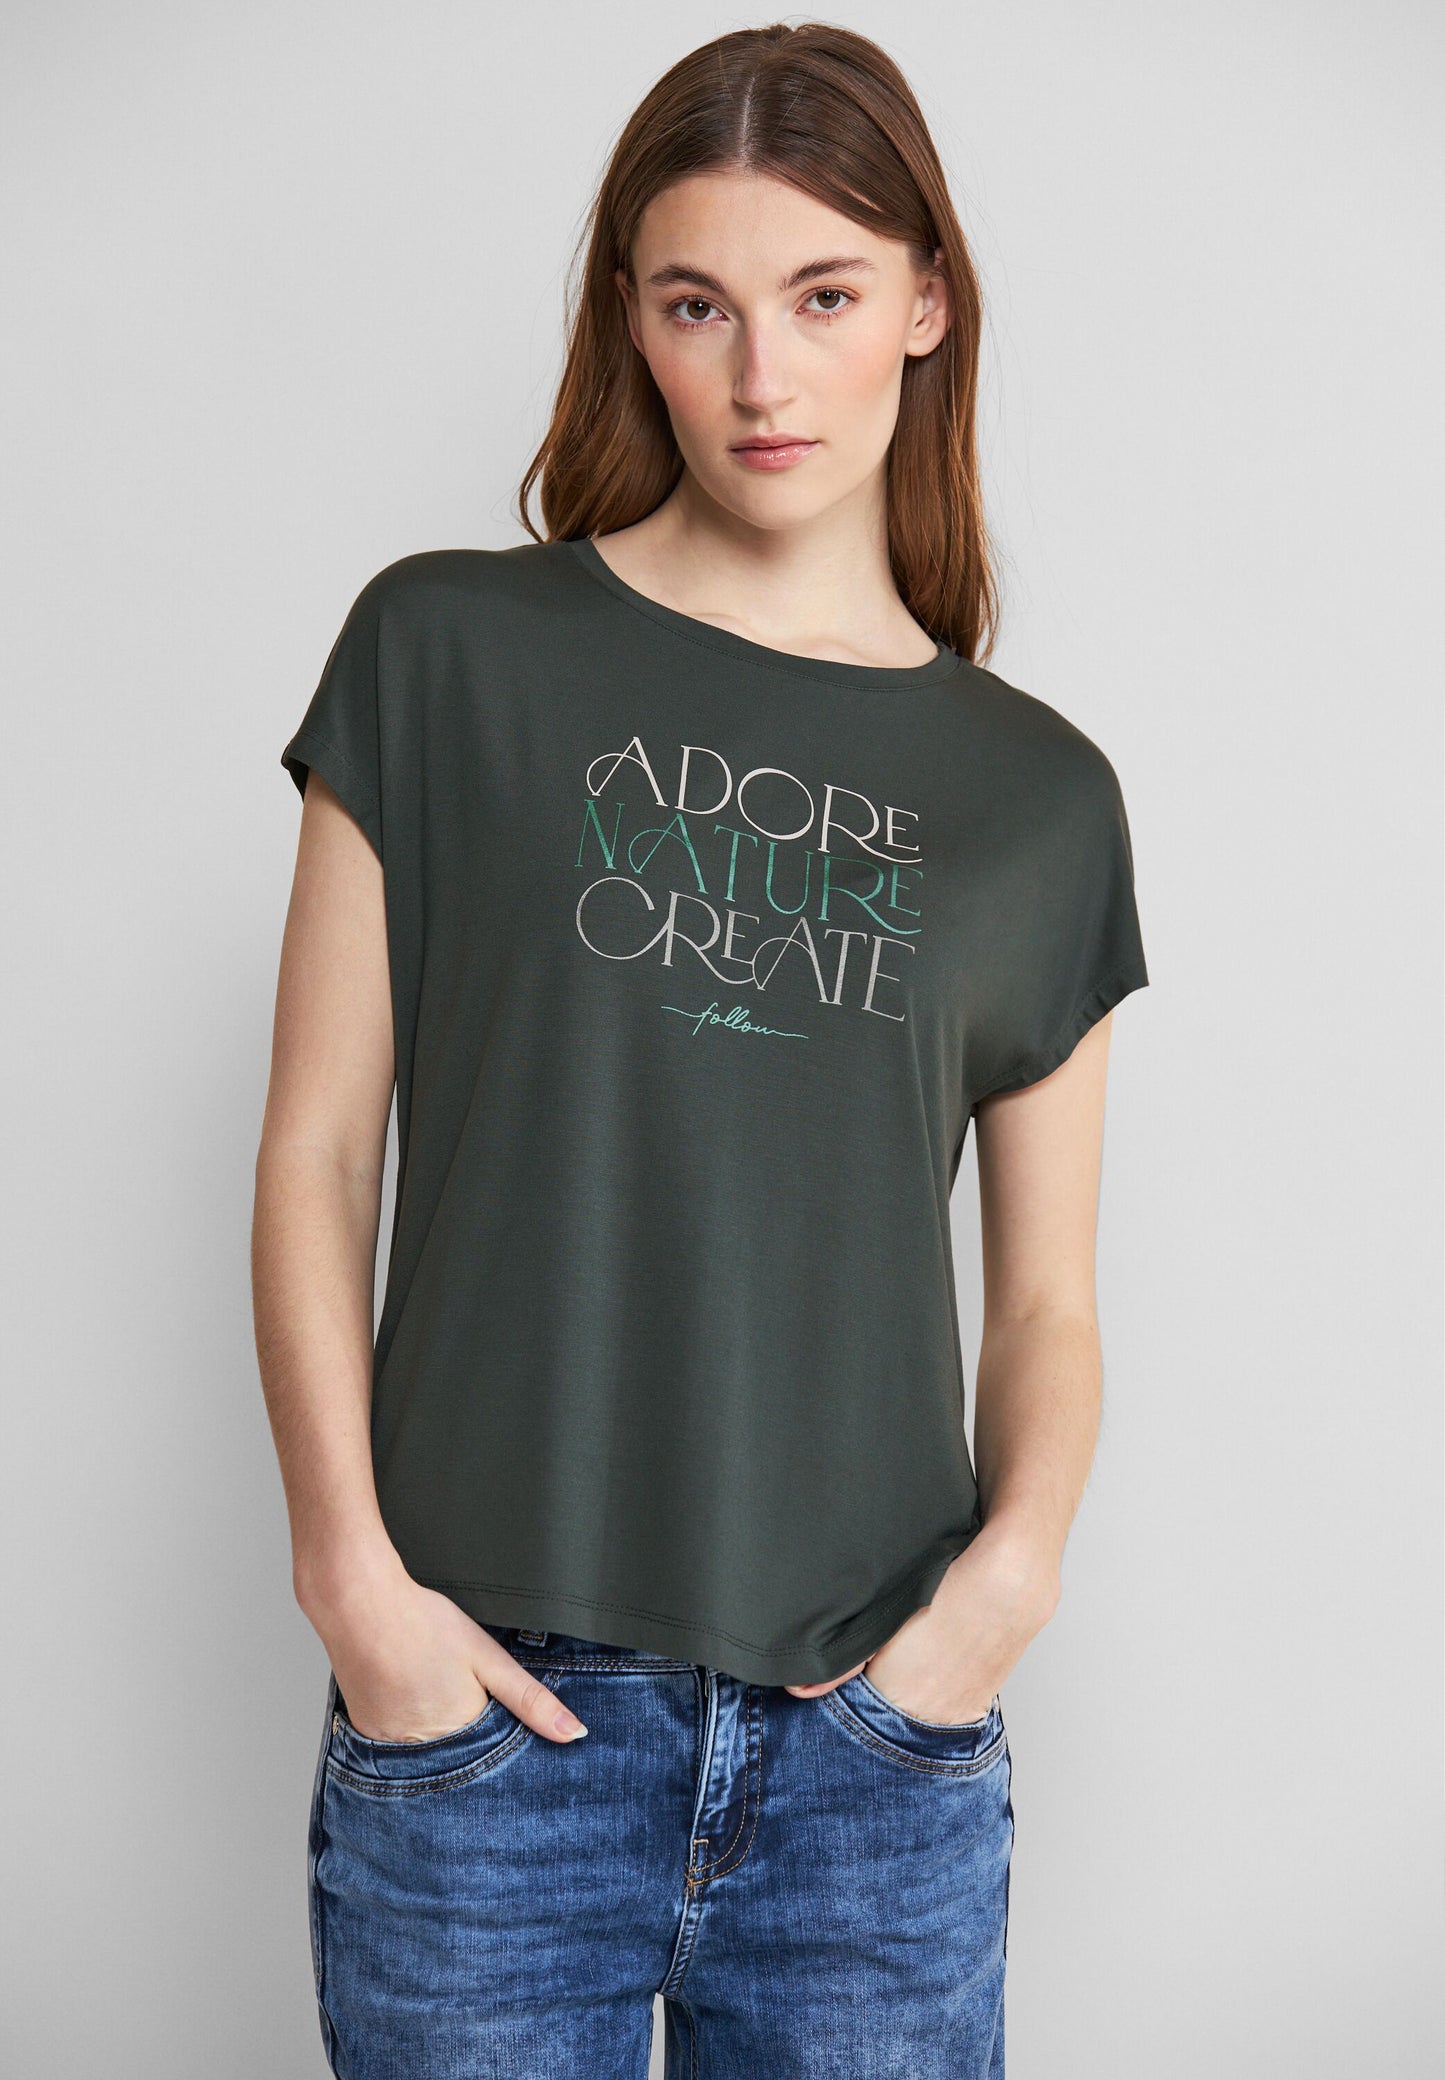 Street One - T-Shirt mit Wording - grün